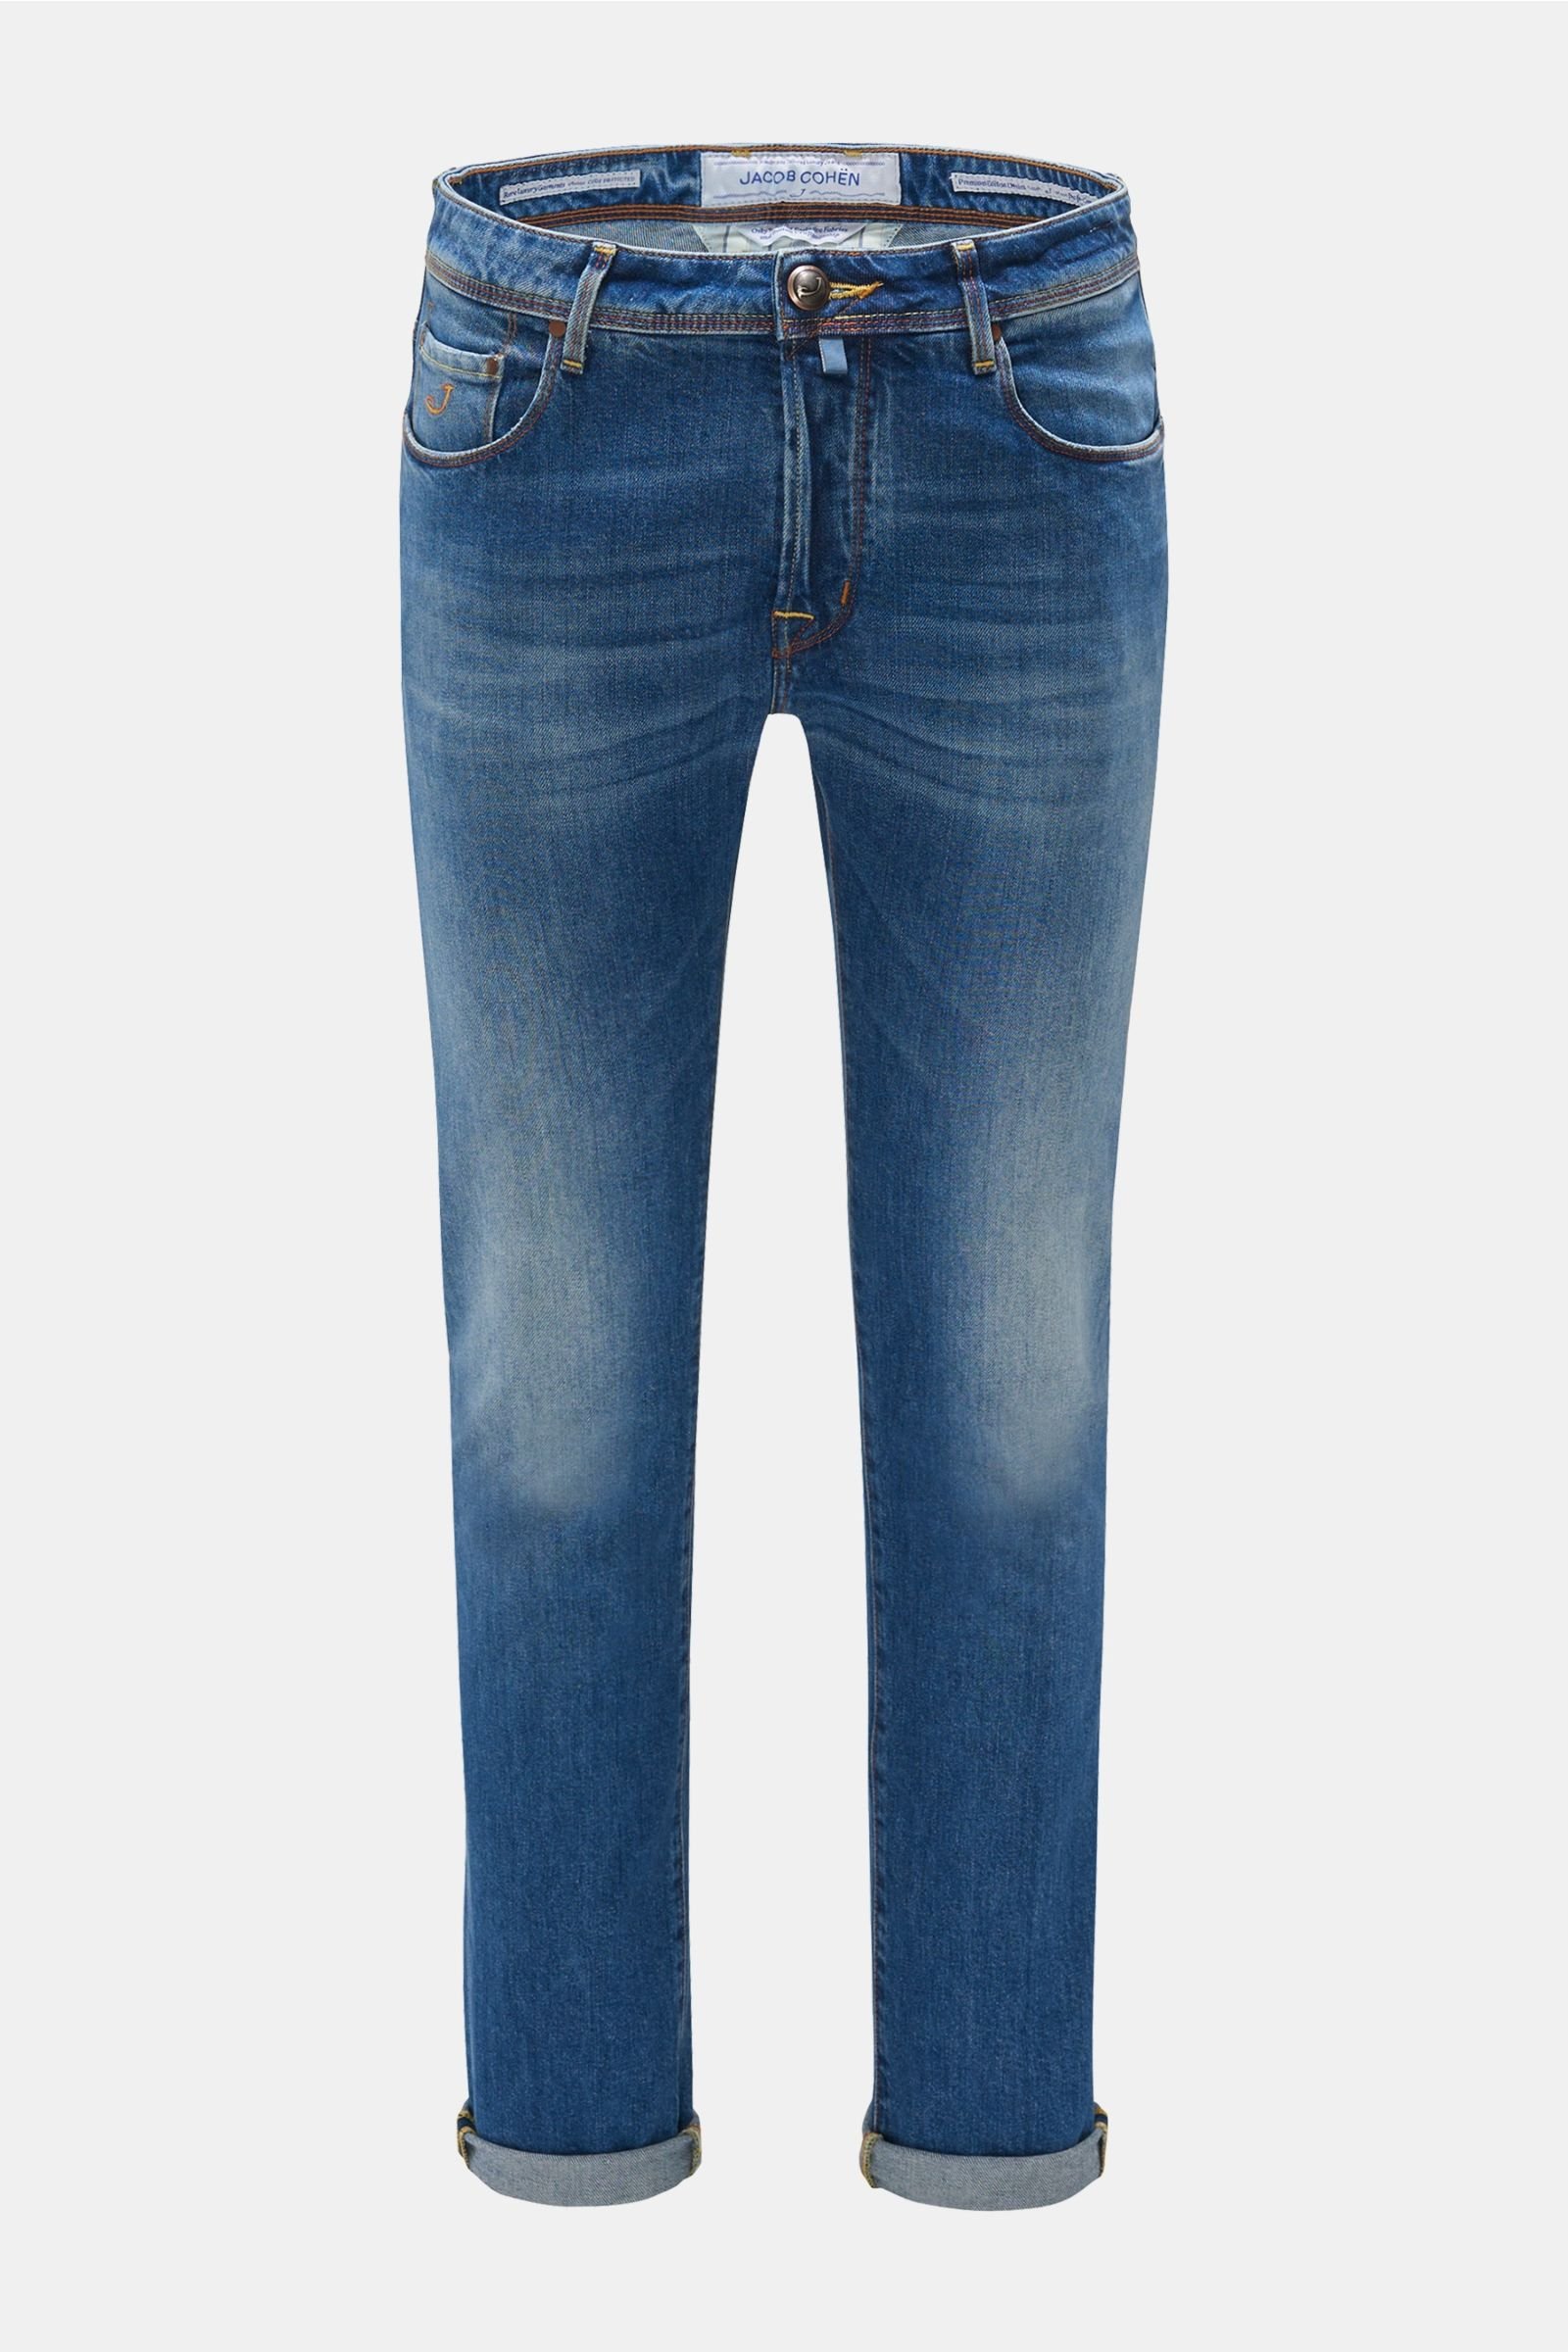 Jeans 'J688 Comfort Slim Fit' grey-blue